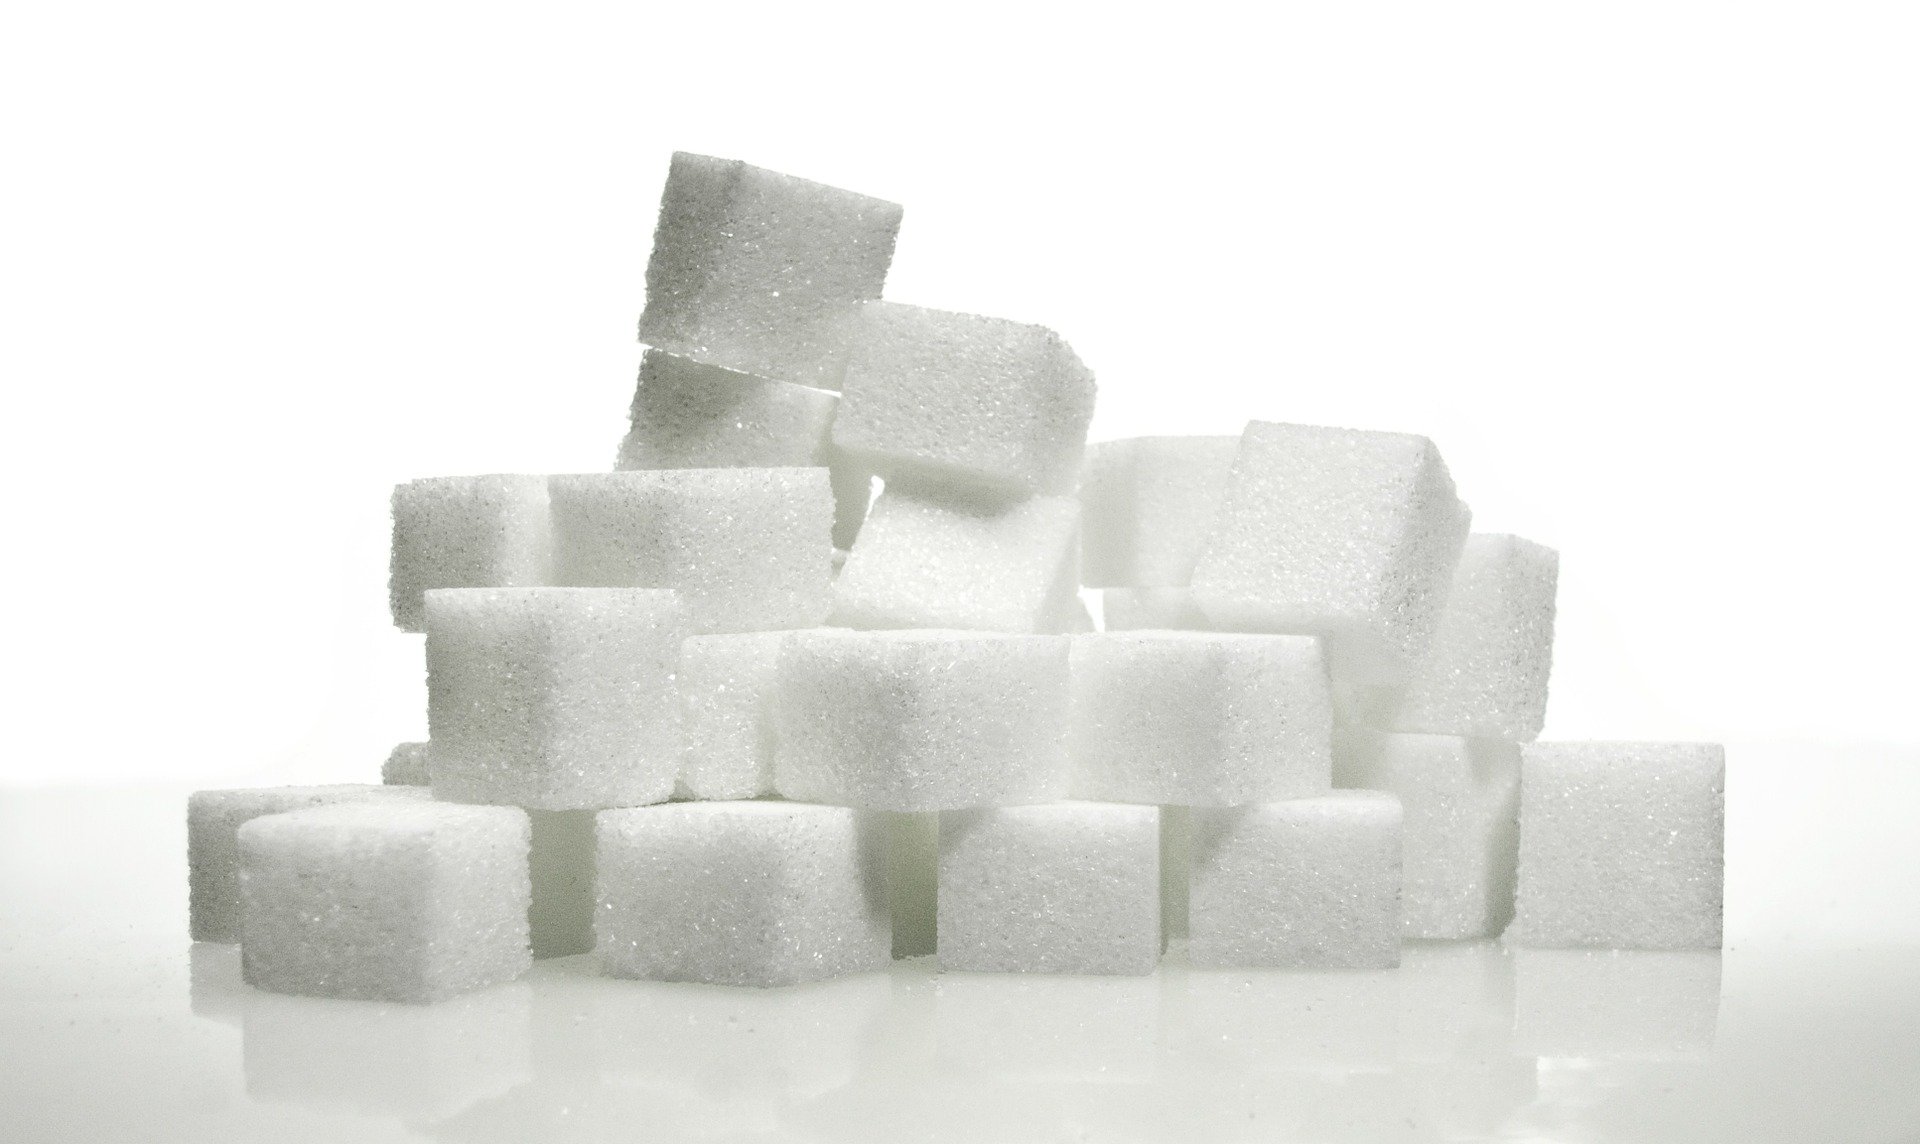 Sécurité alimentaire : l'Inde poursuit sa politique protectionniste et plafonne ses exportations de sucre